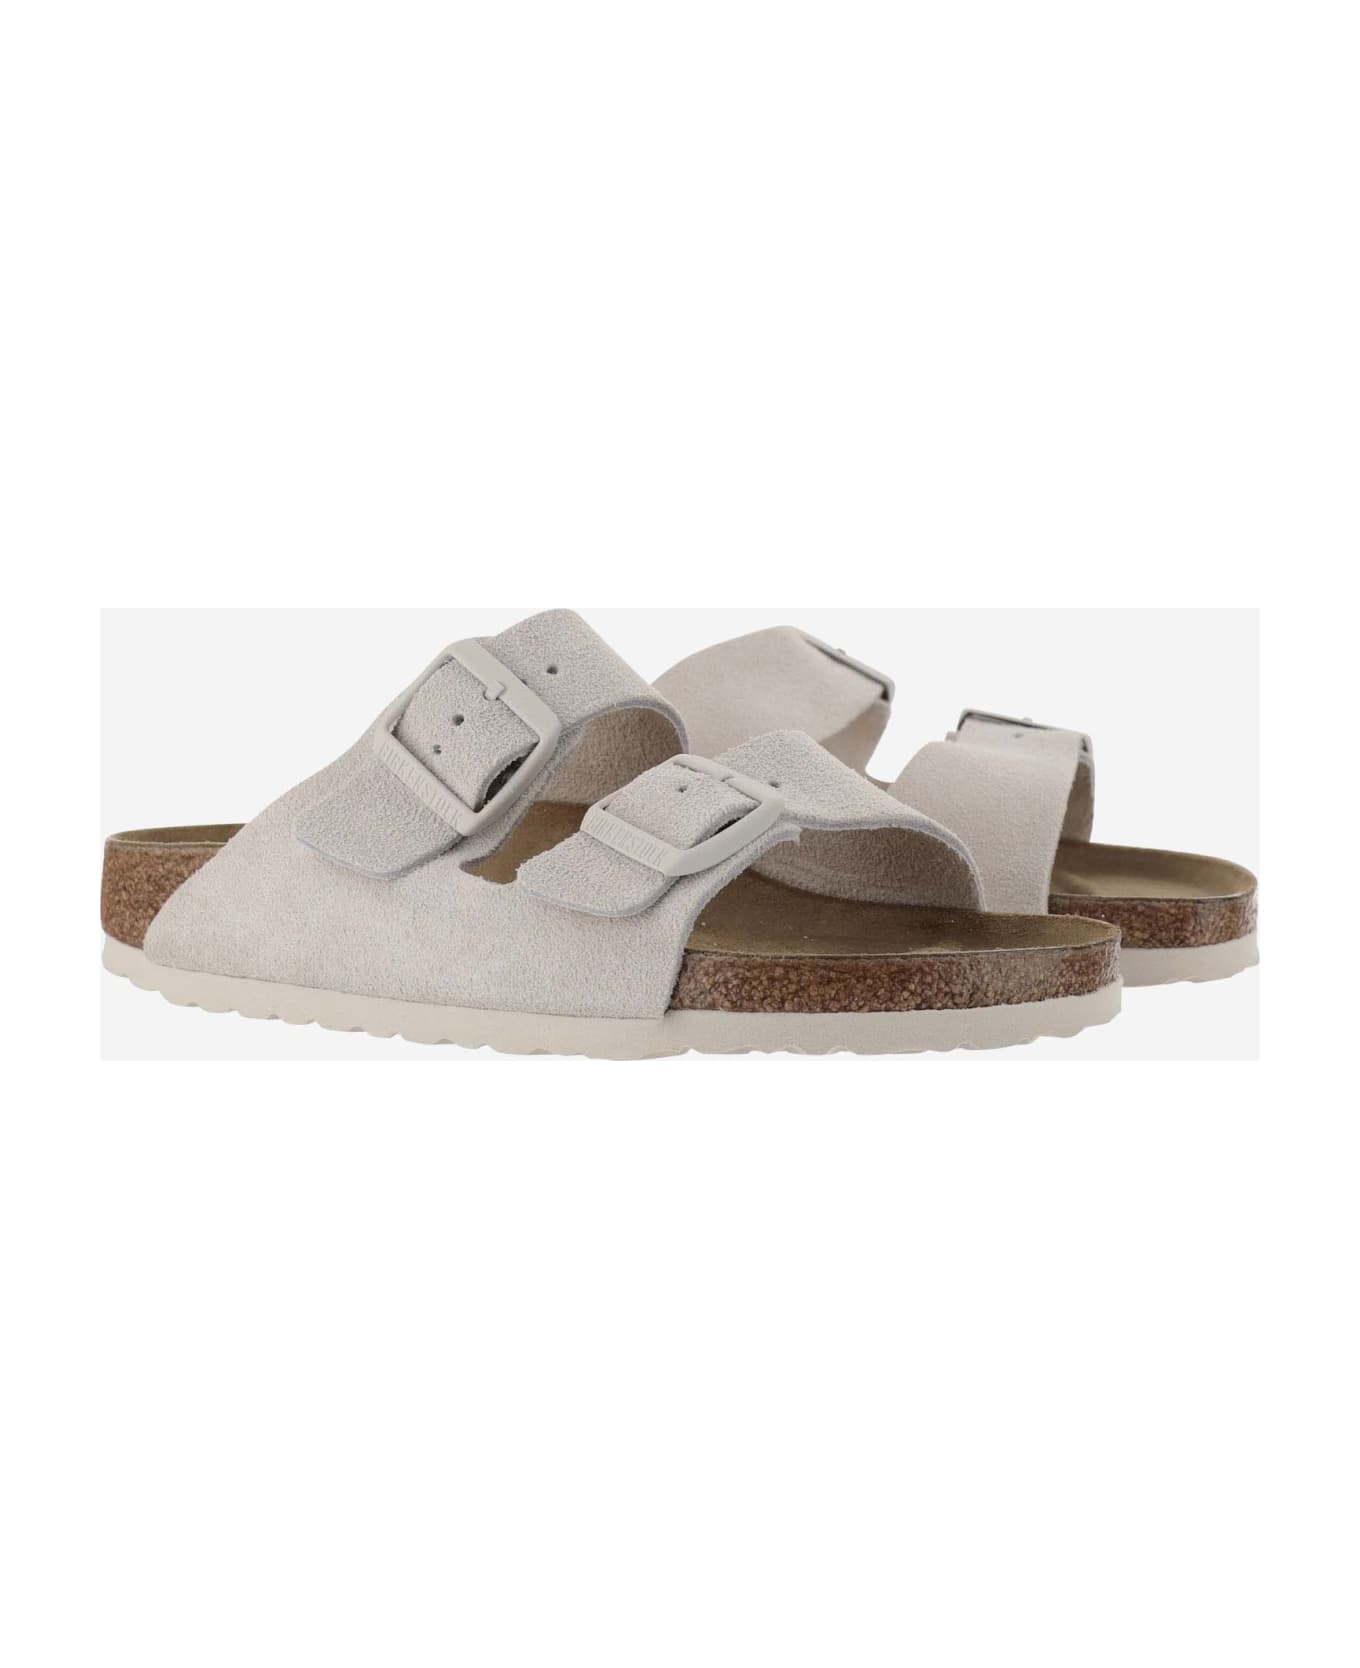 Birkenstock Arizona Suede Sandals - Grey